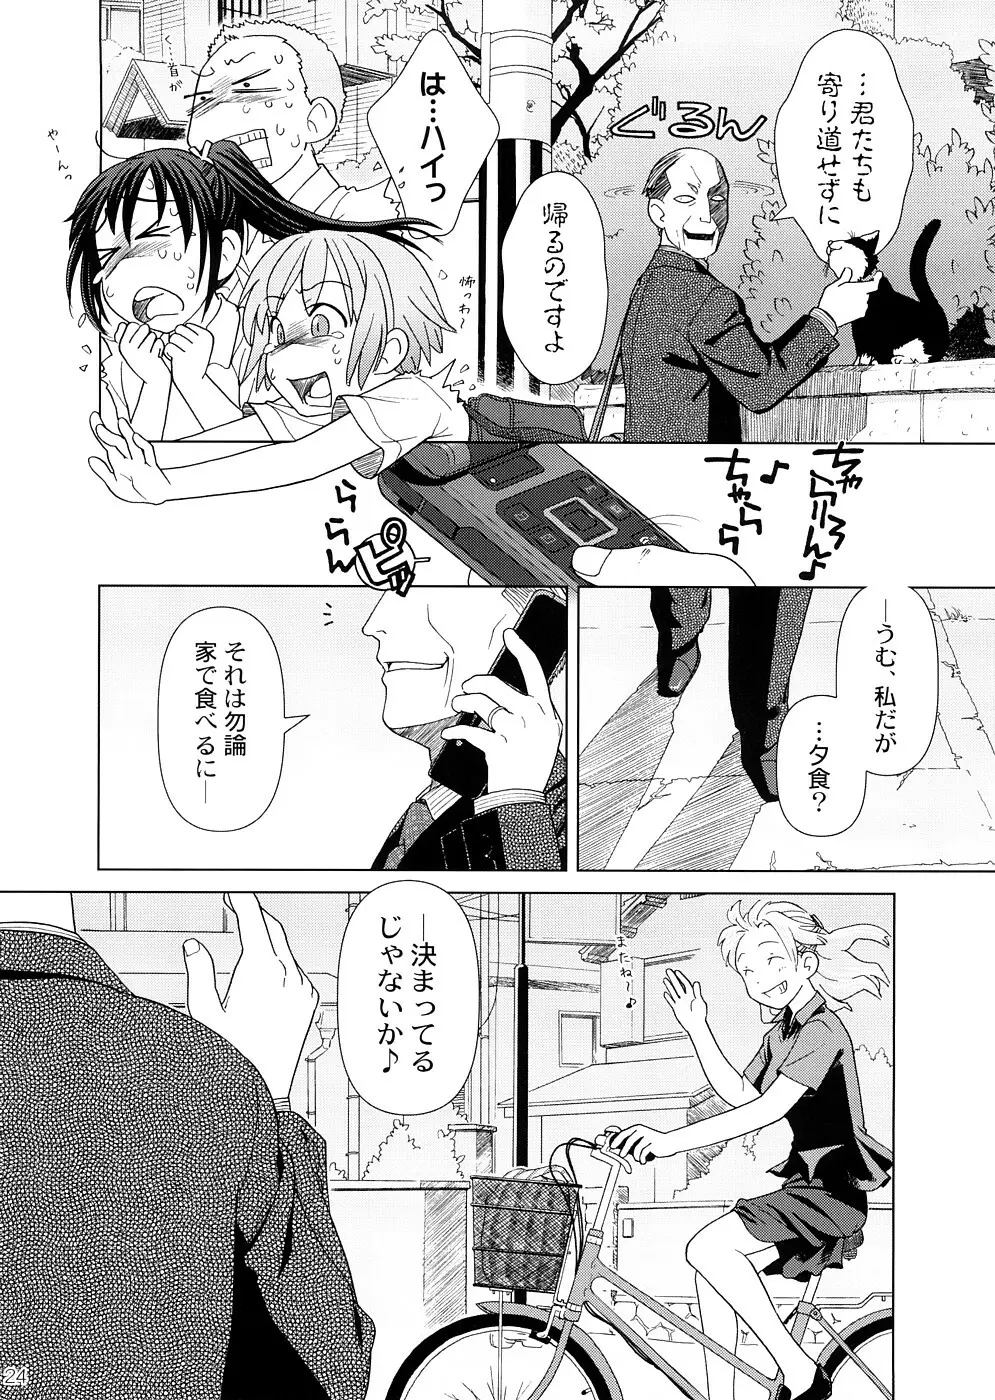 (COMIC1☆2) [オタクビーム (オオツカマヒロ)] 2514 [24→←14] #Extra chapter 23ページ